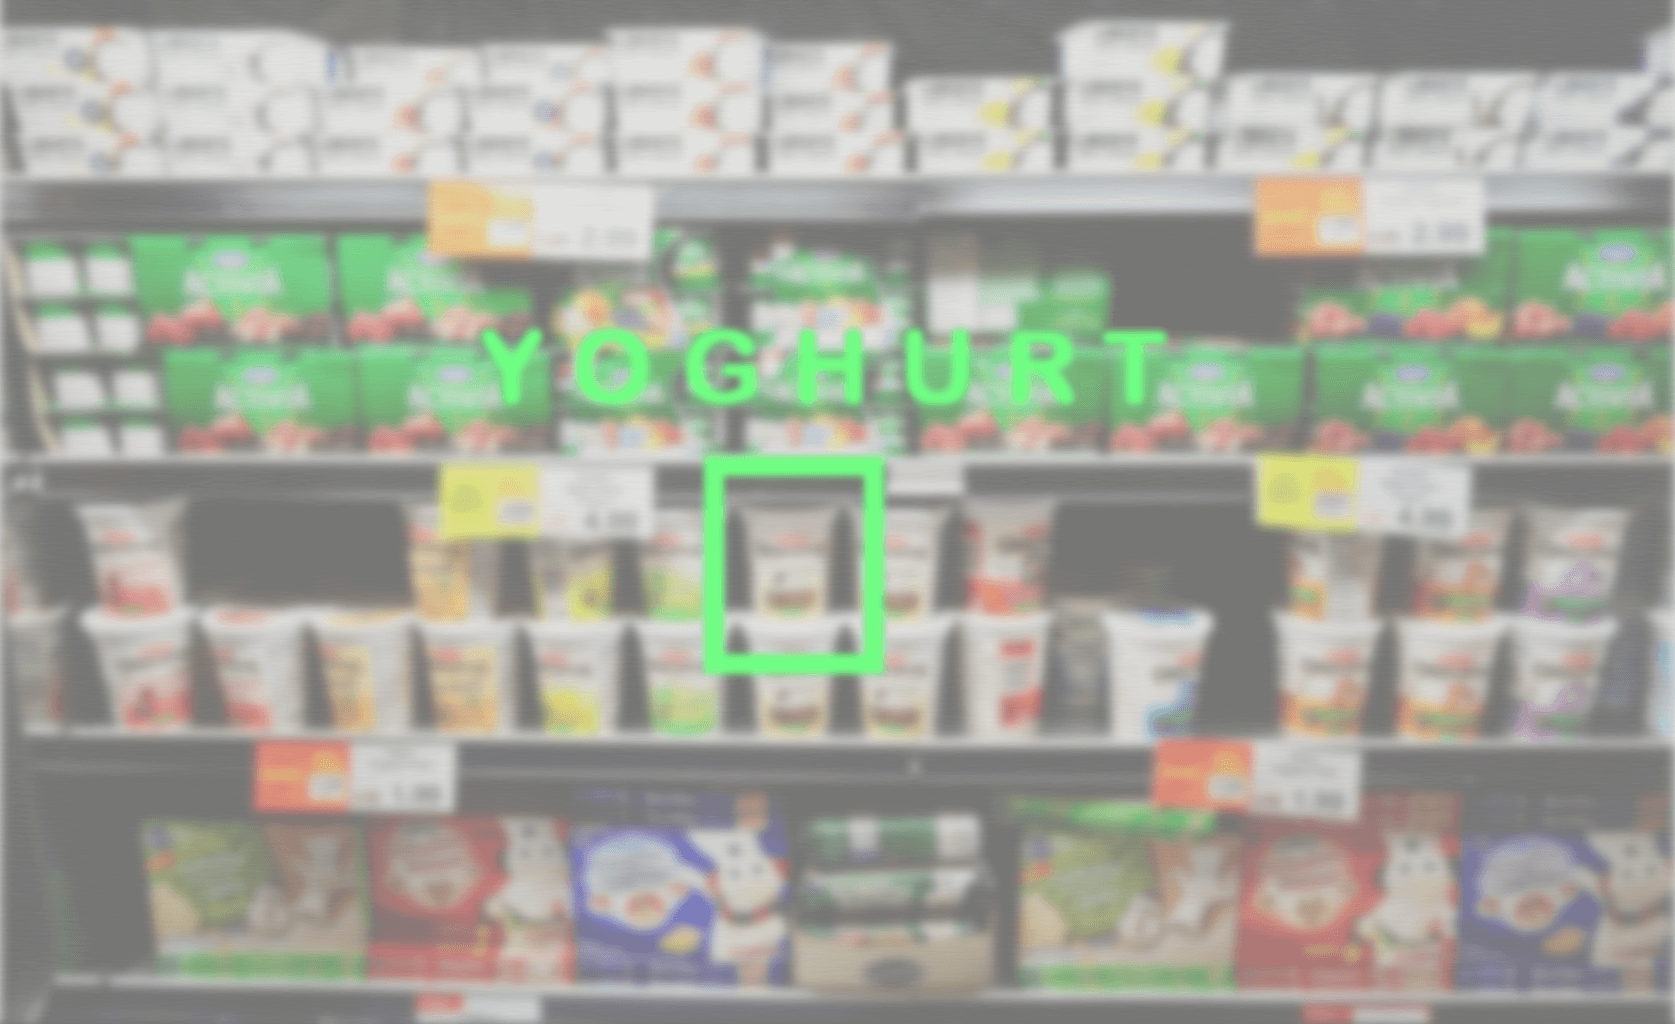 Blick durch eine AR-Brille auf eine Kühltheke. In der Bildmitte zeigt ein grünes Rechteck sowie die Information darüber, dass sich an dieser Stelle Joghurt befindet.